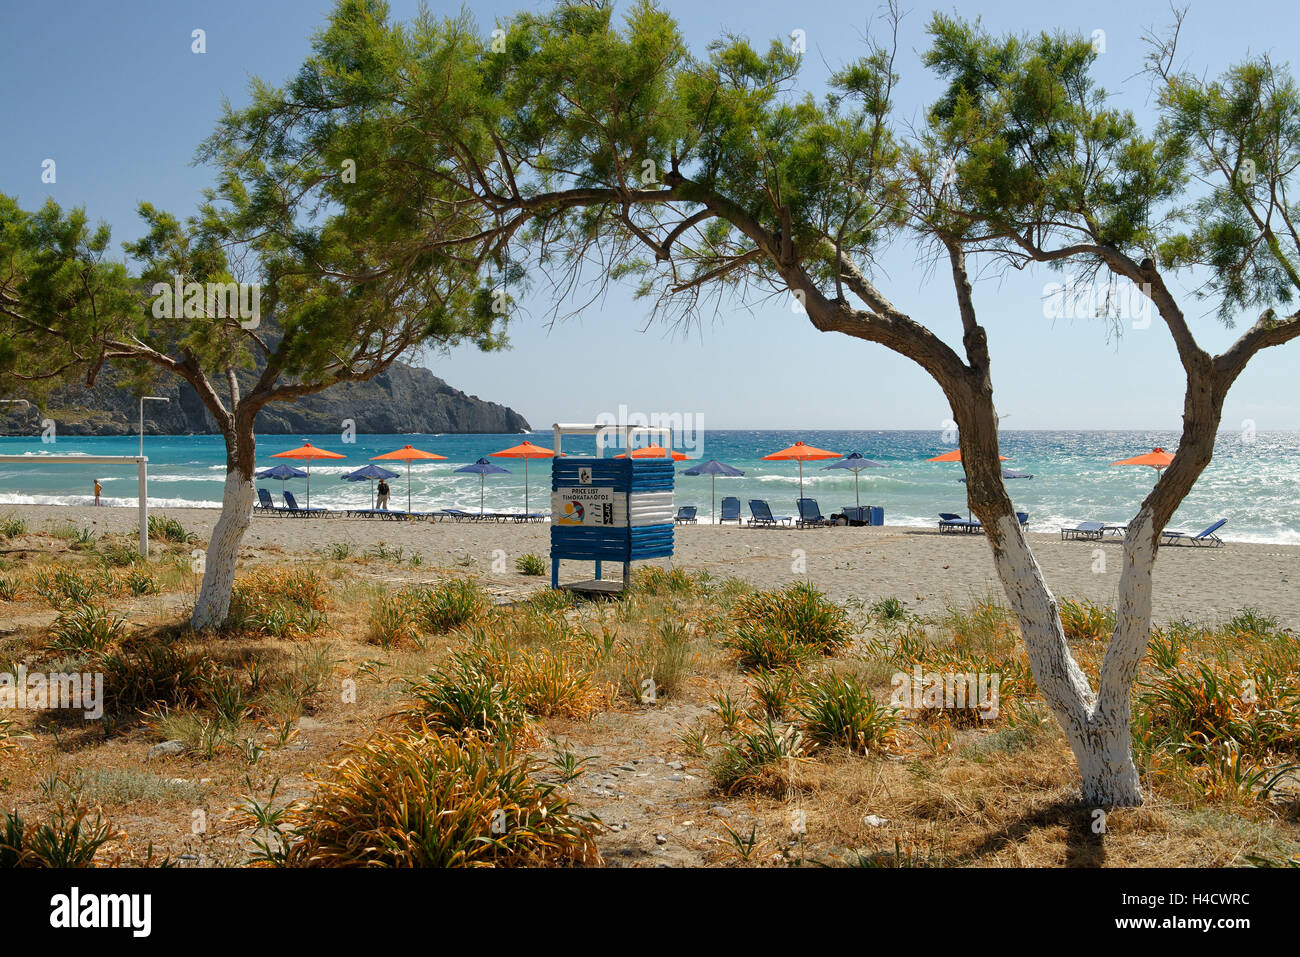 On the beach Plakias, Rethimnon district, Crete, south coast, Greece Stock Photo